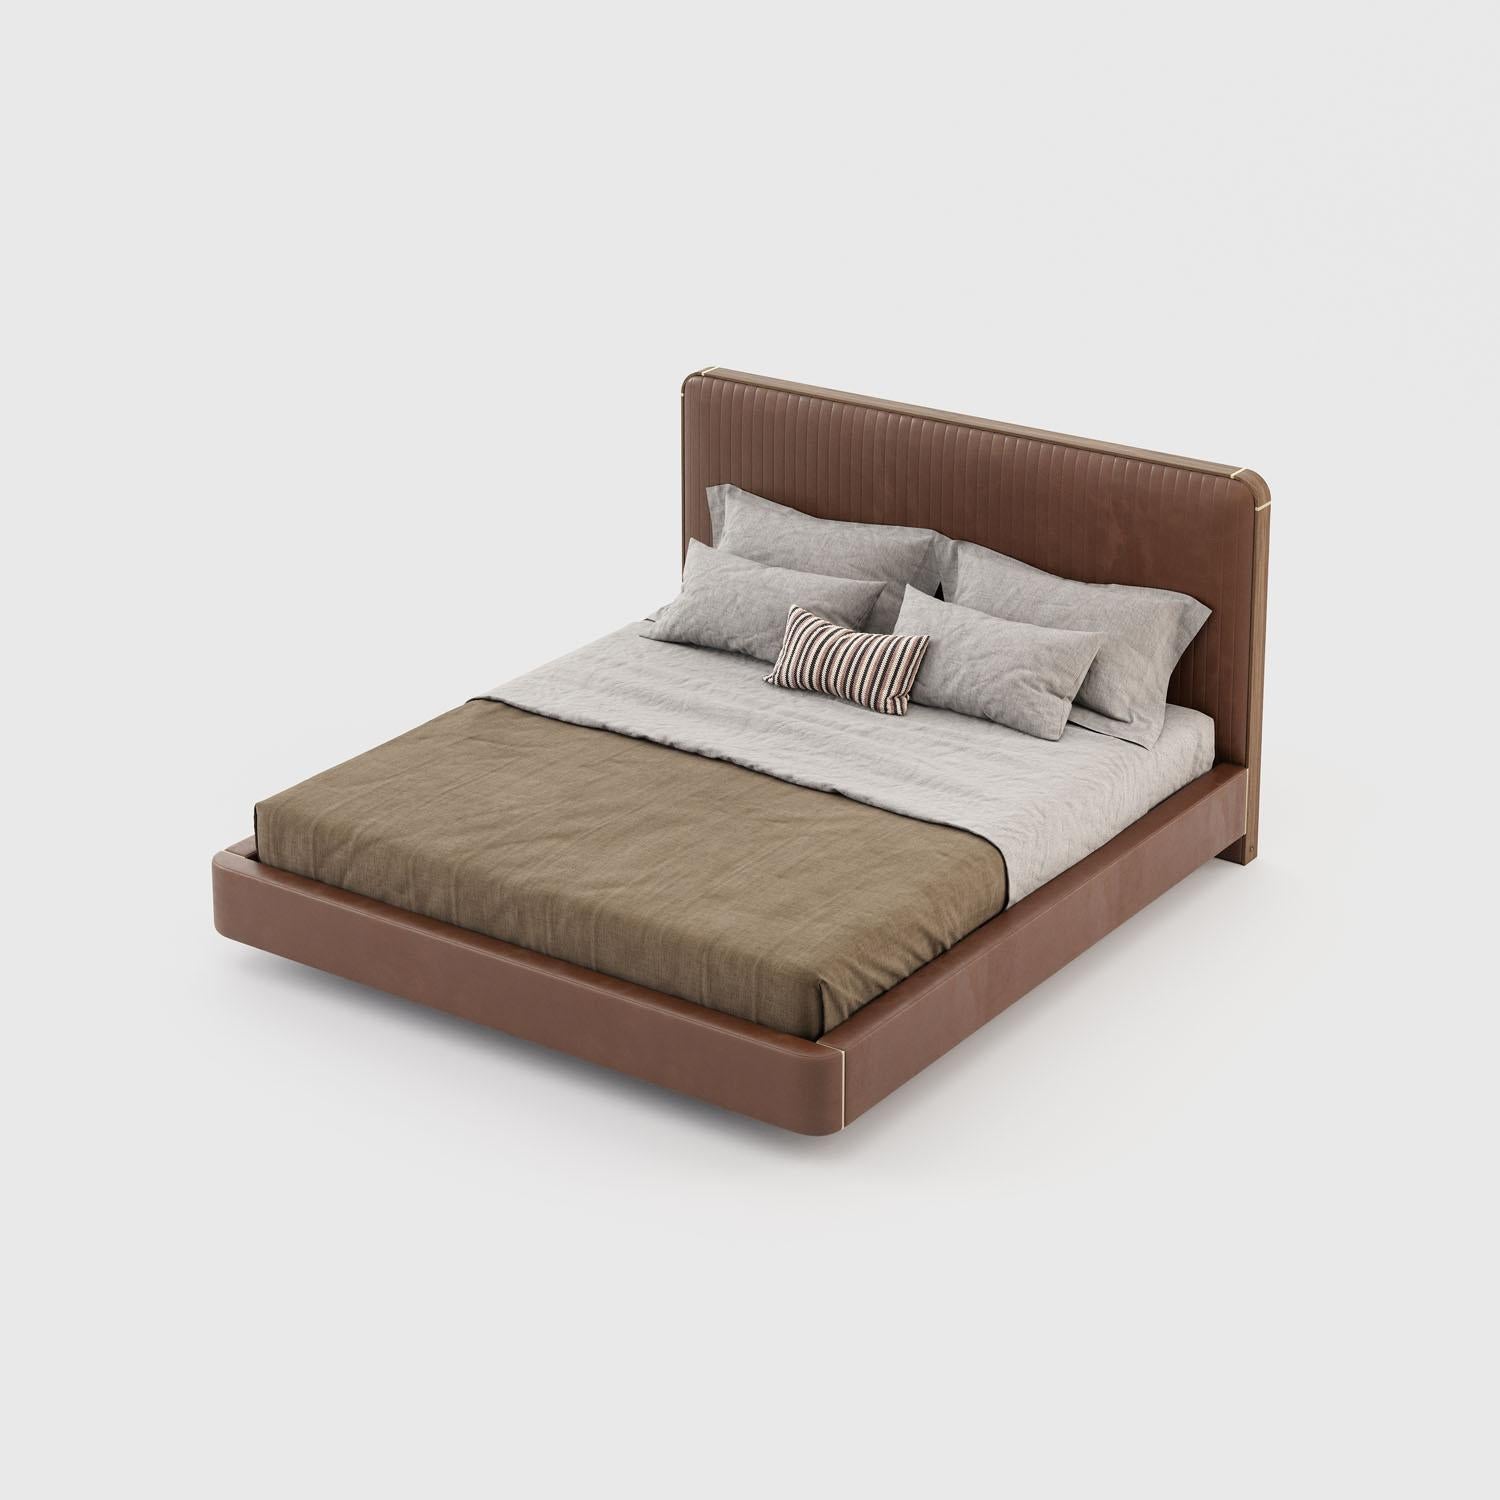 Amerikanisches Kingsize-Bett, das auf Bestellung in einer Auswahl von Samtfarben mit Metall- und Holzdetails hergestellt wird. Ein klassisches und stilvolles Design mit einem weich gepolsterten Kopfteil aus Samt mit einem konturierten Rahmen aus